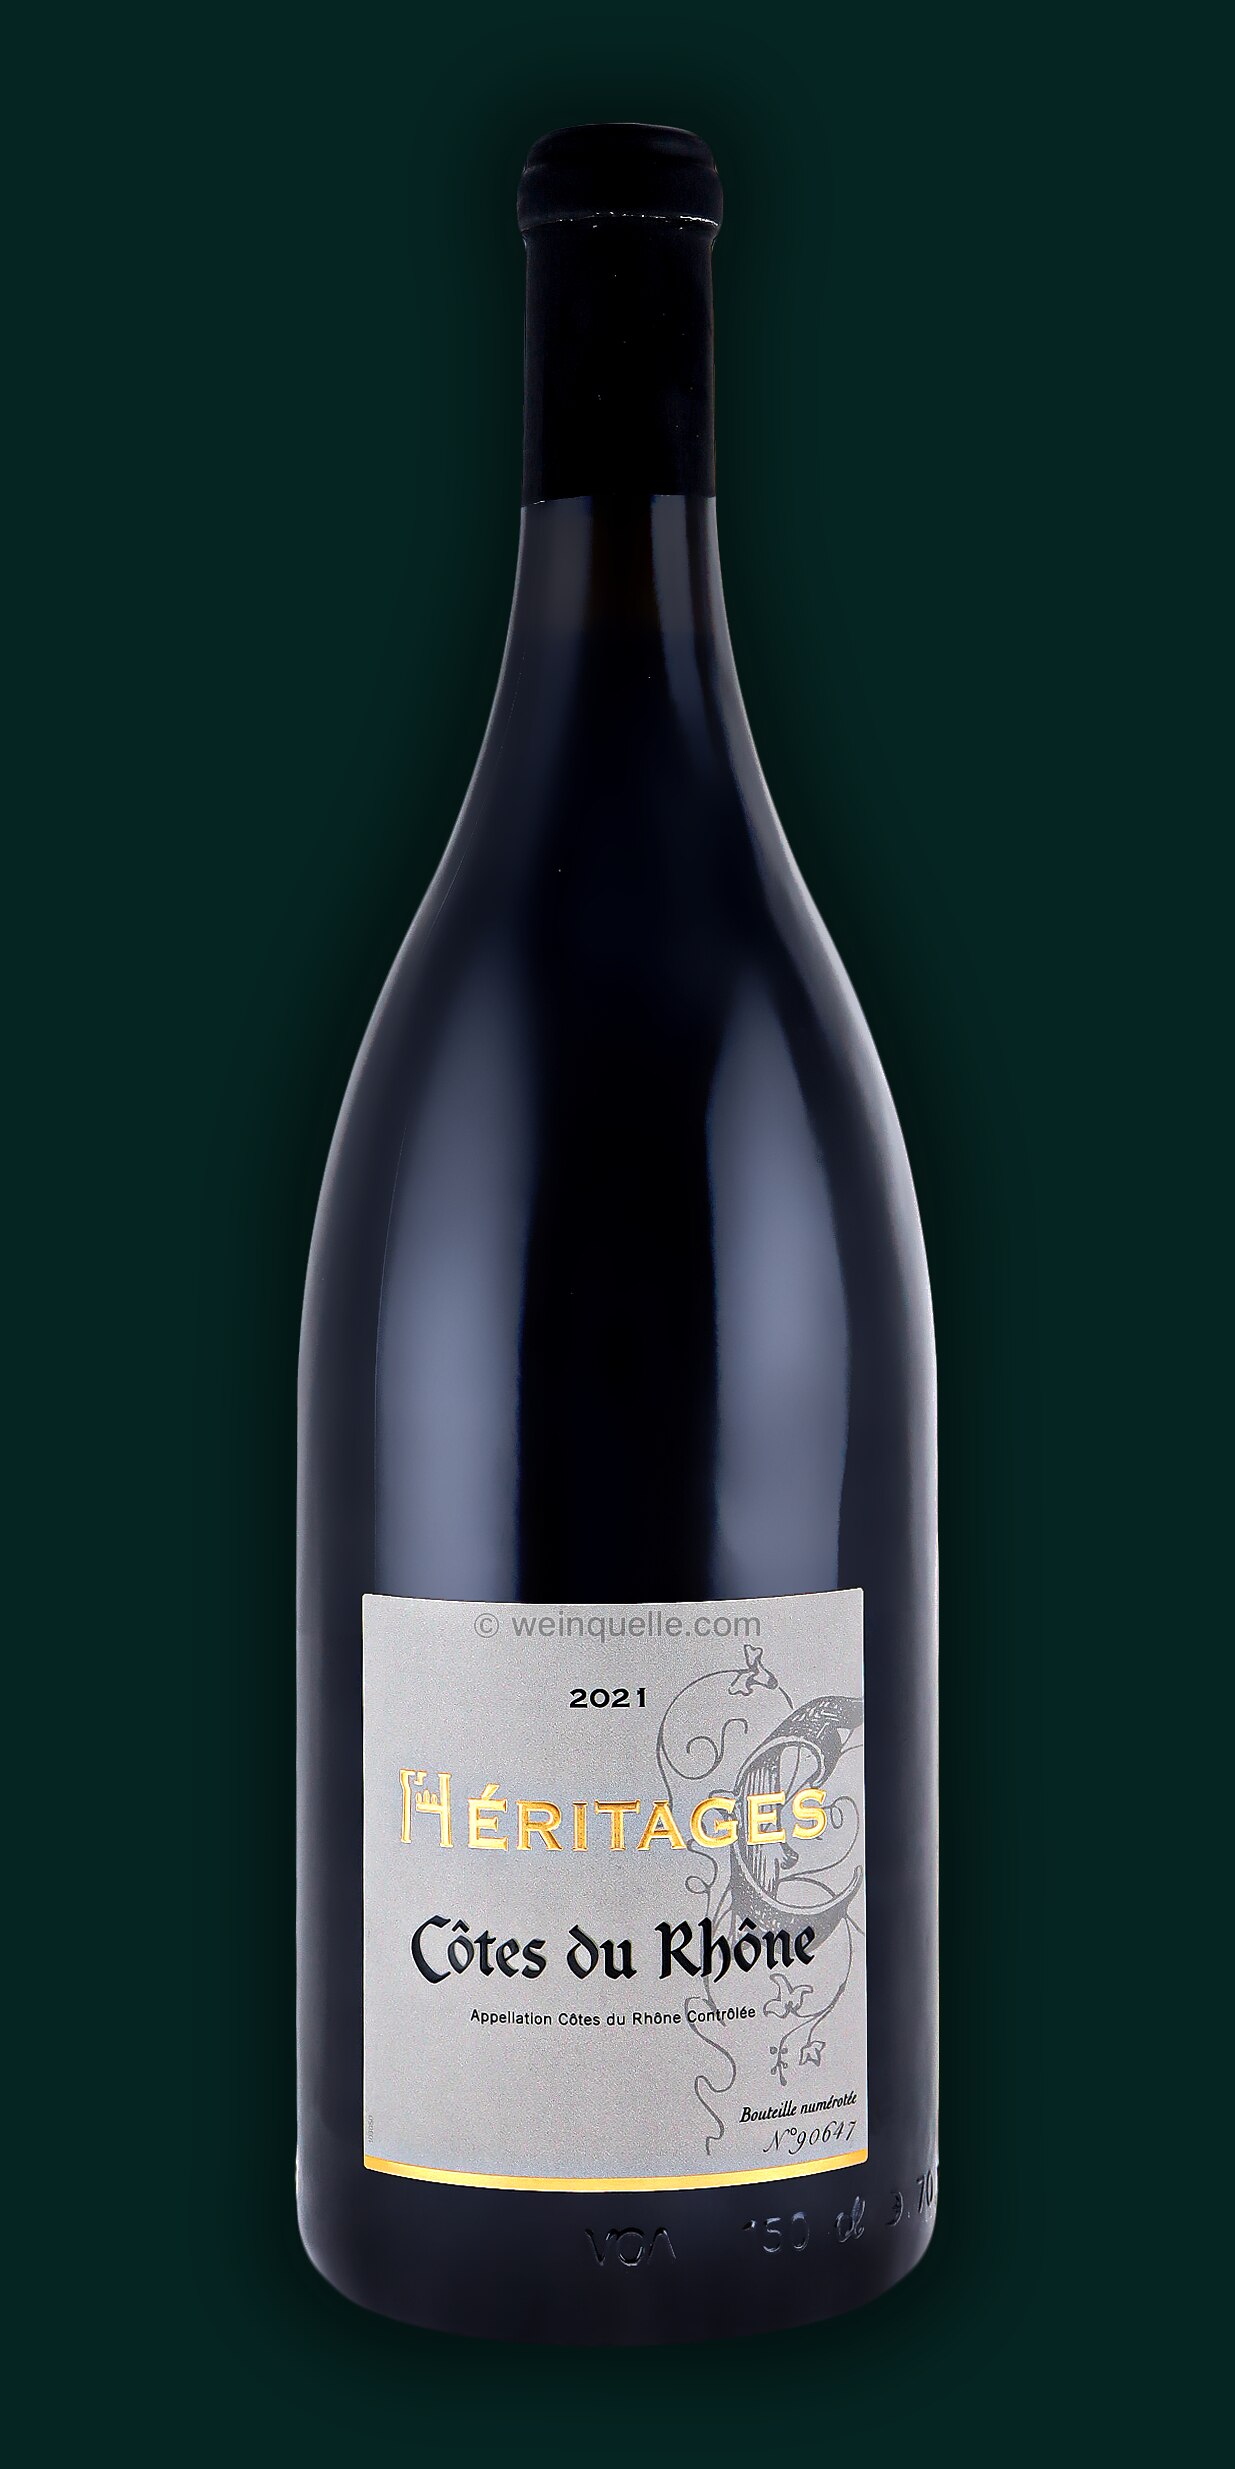 - Weinquelle AOP 1,5 Lühmann Héritages Côtes-du-Rhône Ogier Liter